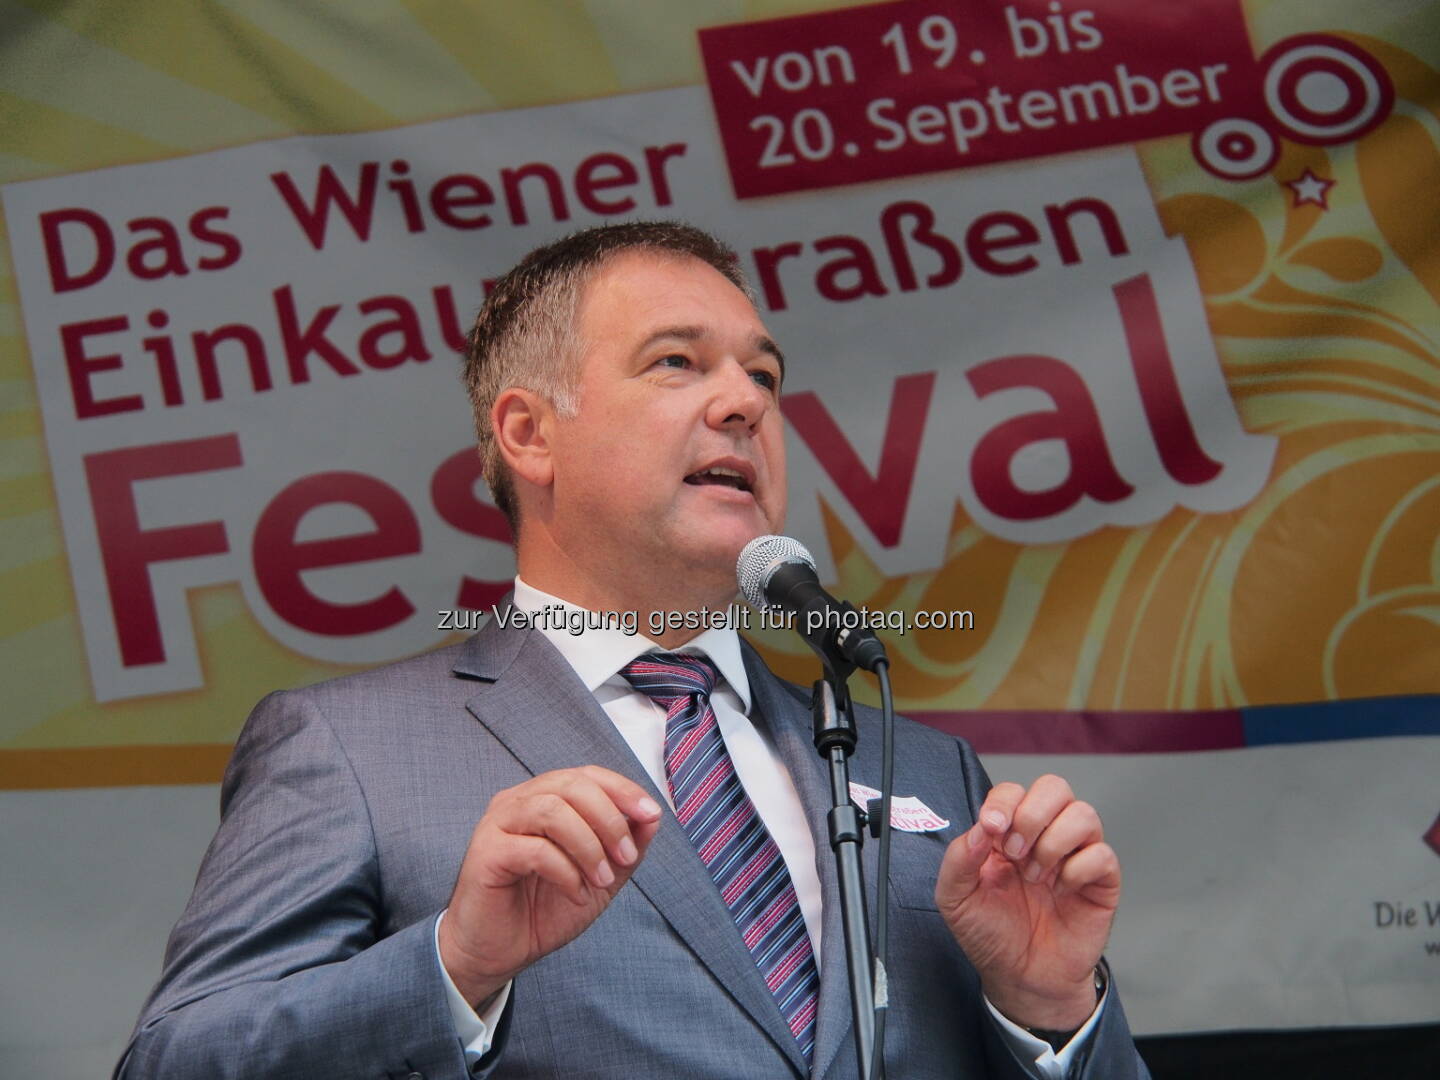 WK Wien Präsident Ruck eröffnet Einkaufsstraßen Festival